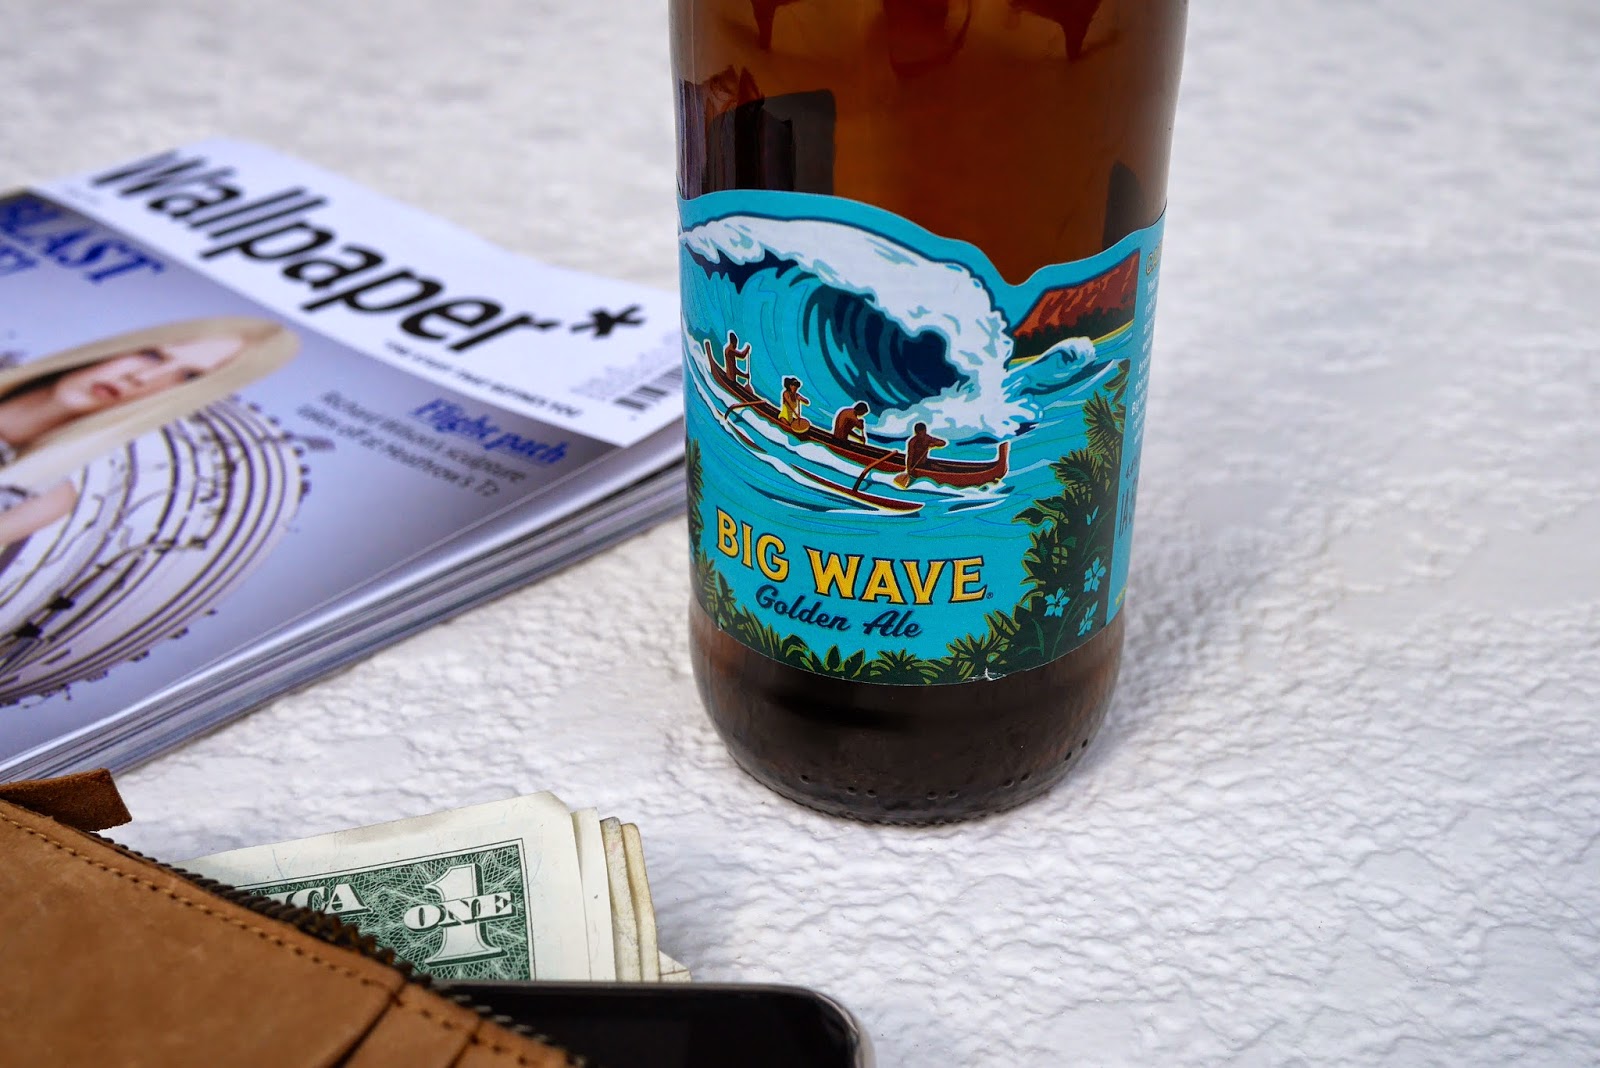 kona brewing big wave golden ale review, lifestyle blog uk, design blog, beer bottle designs, big wave beer